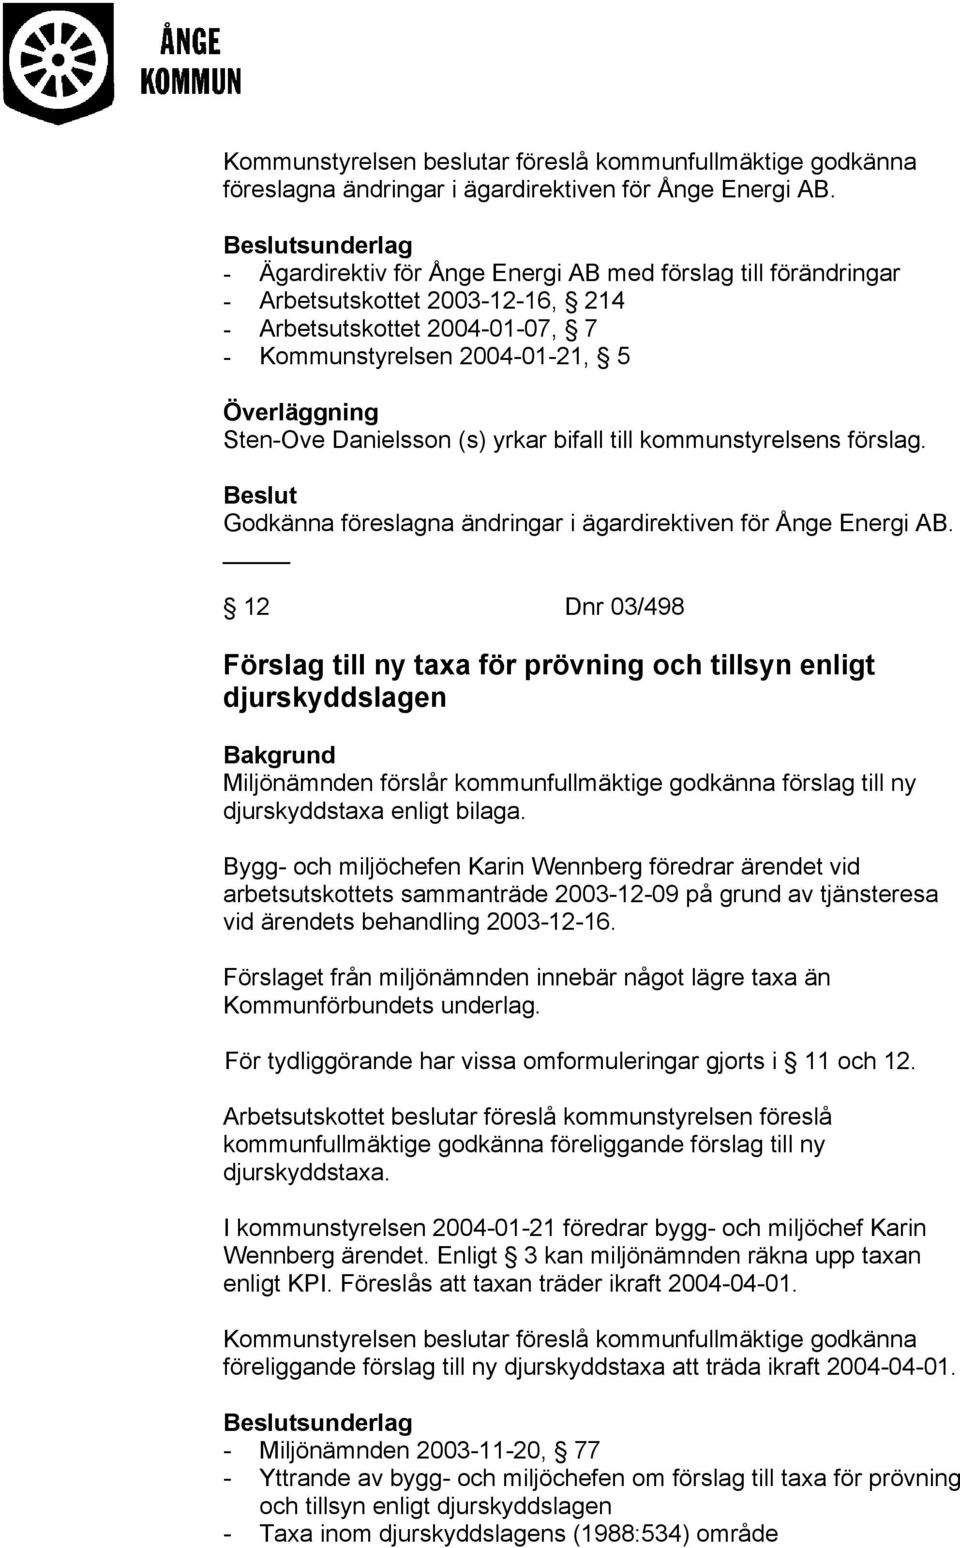 Danielsson (s) yrkar bifall till kommunstyrelsens förslag. Godkänna föreslagna ändringar i ägardirektiven för Ånge Energi AB.